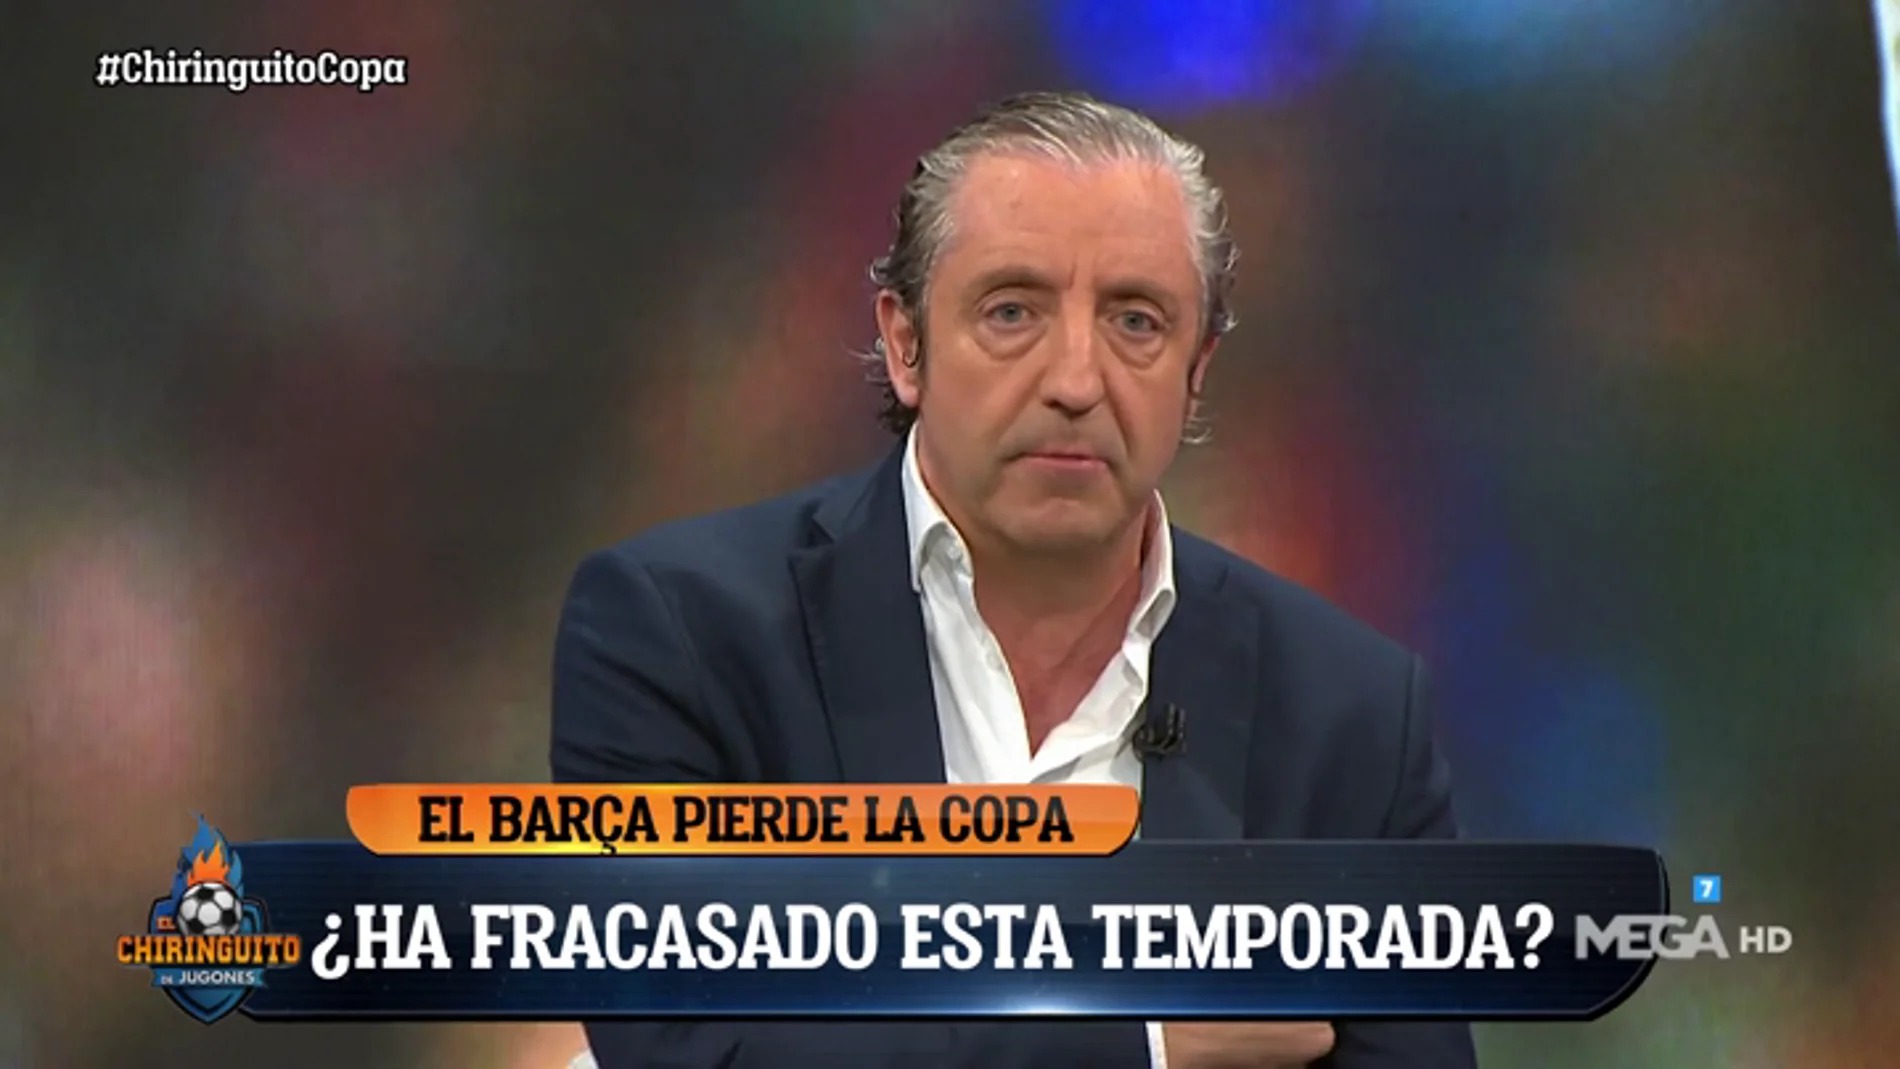 Josep Pedrerol: "¡Esto es de vergüenza! El Barça necesita jugadores que sientan el escudo. Y que dimita Bartomeu"